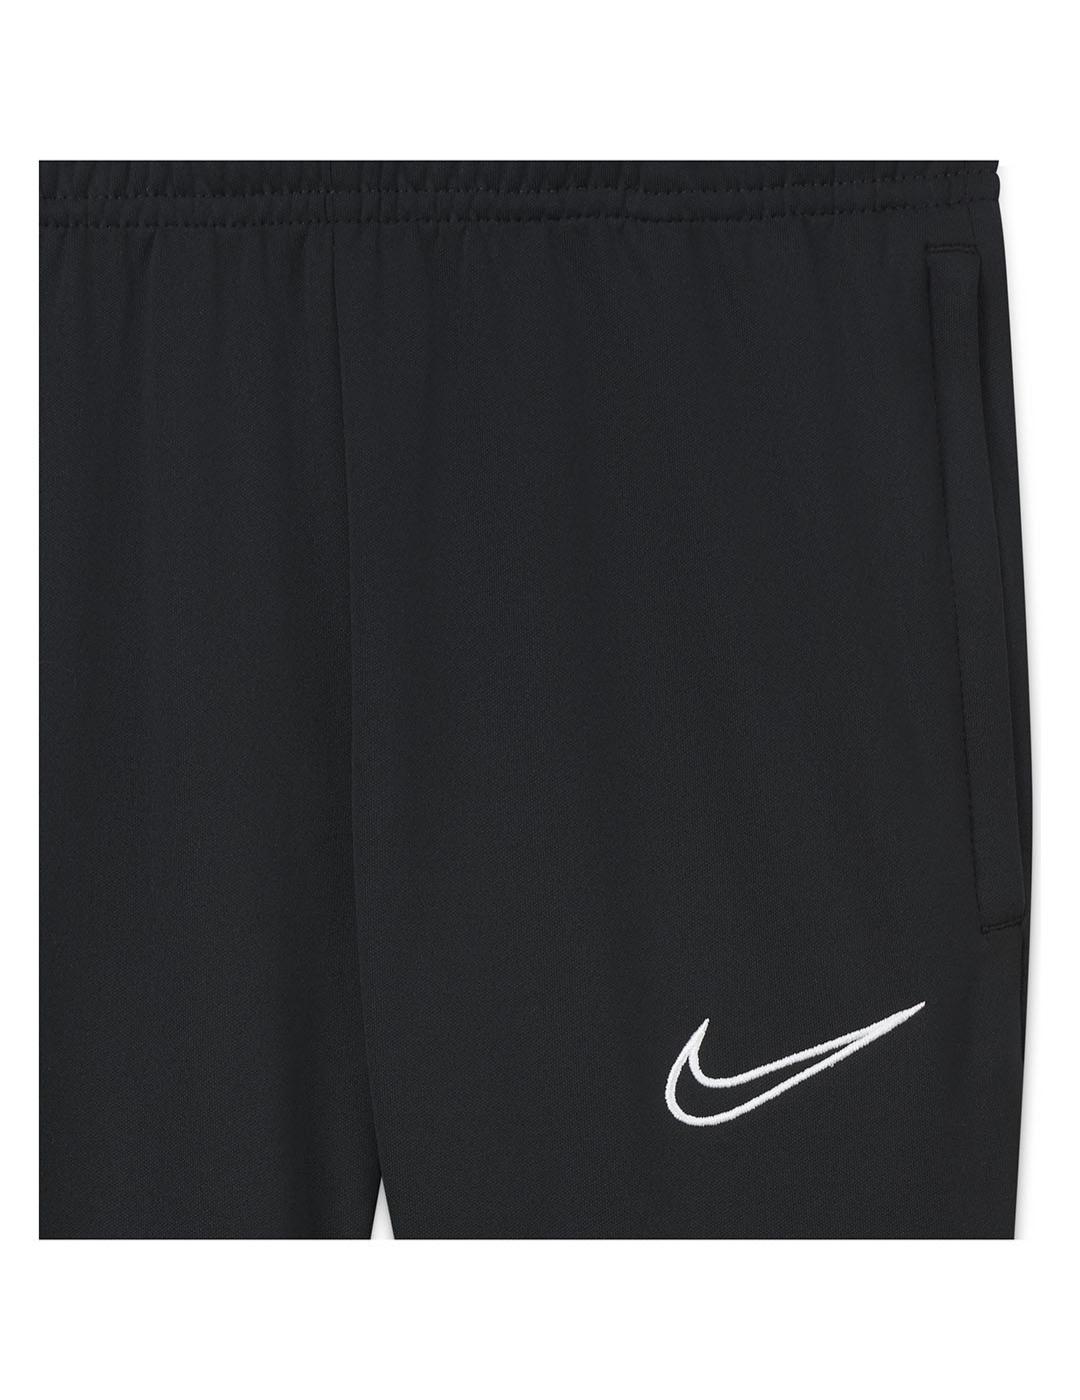 Pantalon Niño Nike Dry Acd21 Negro